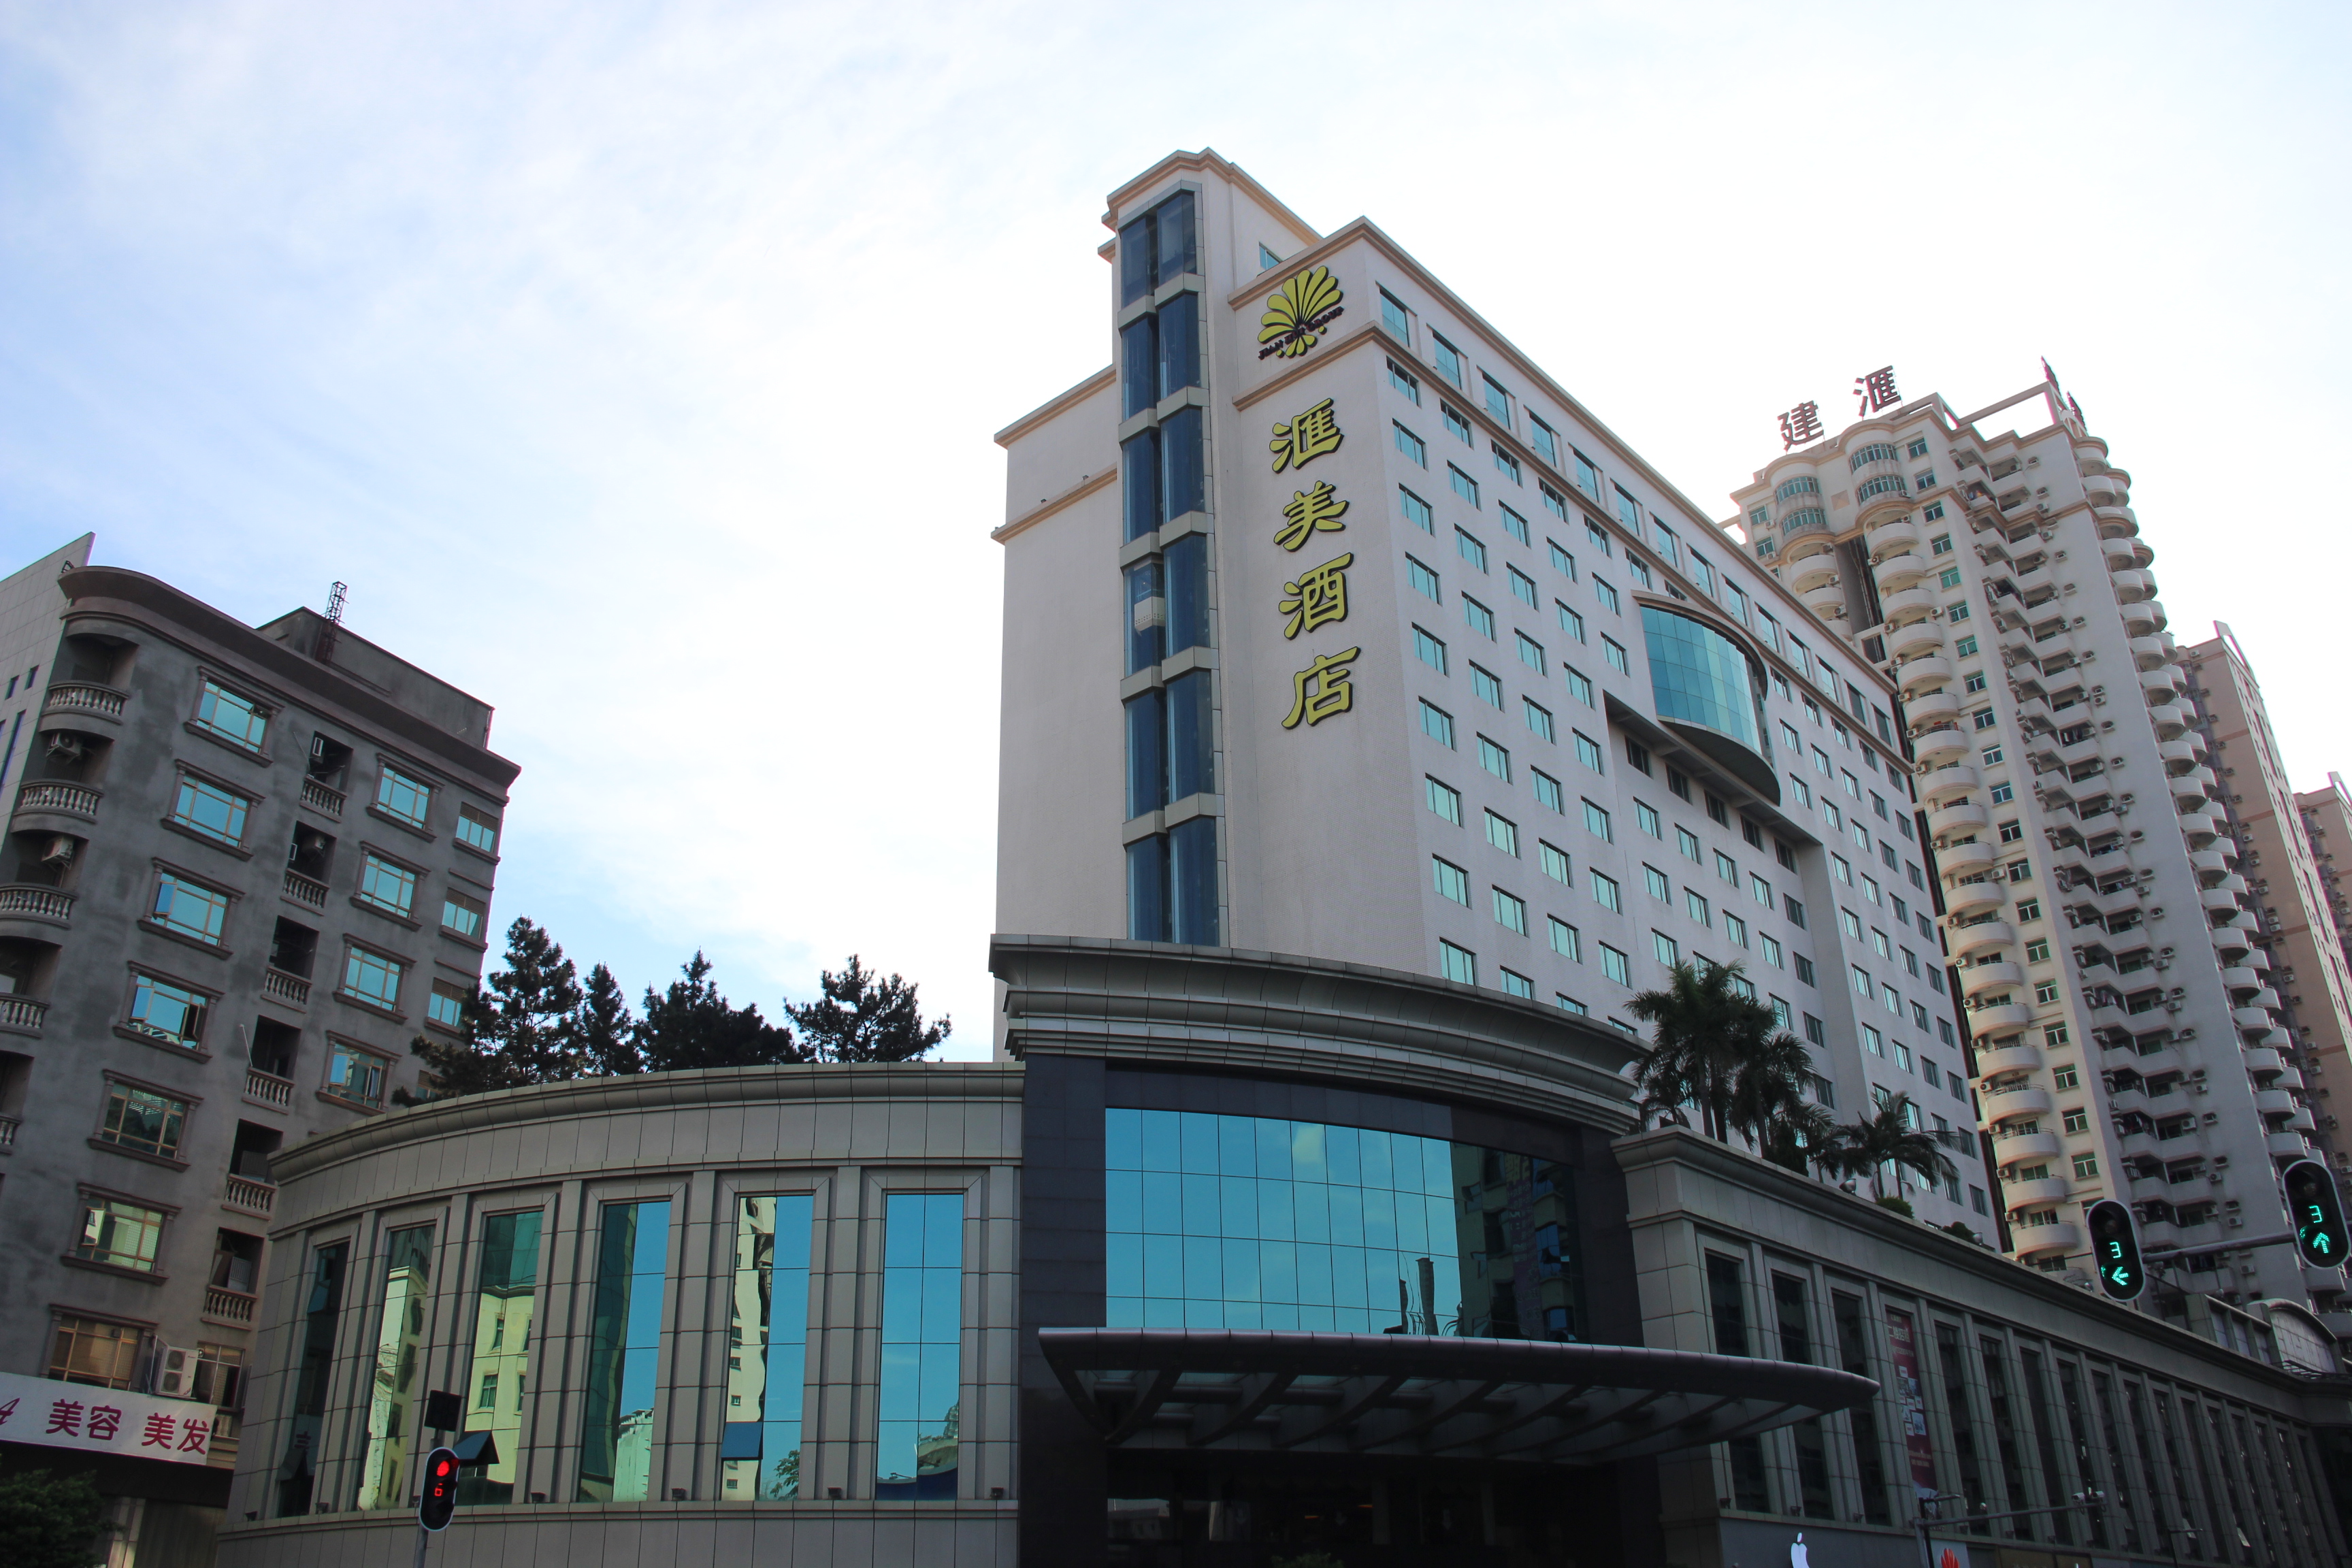 東莞匯景酒店 (Grand View Hotel) - Agoda 提供行程前一刻網上即時優惠價格訂房服務